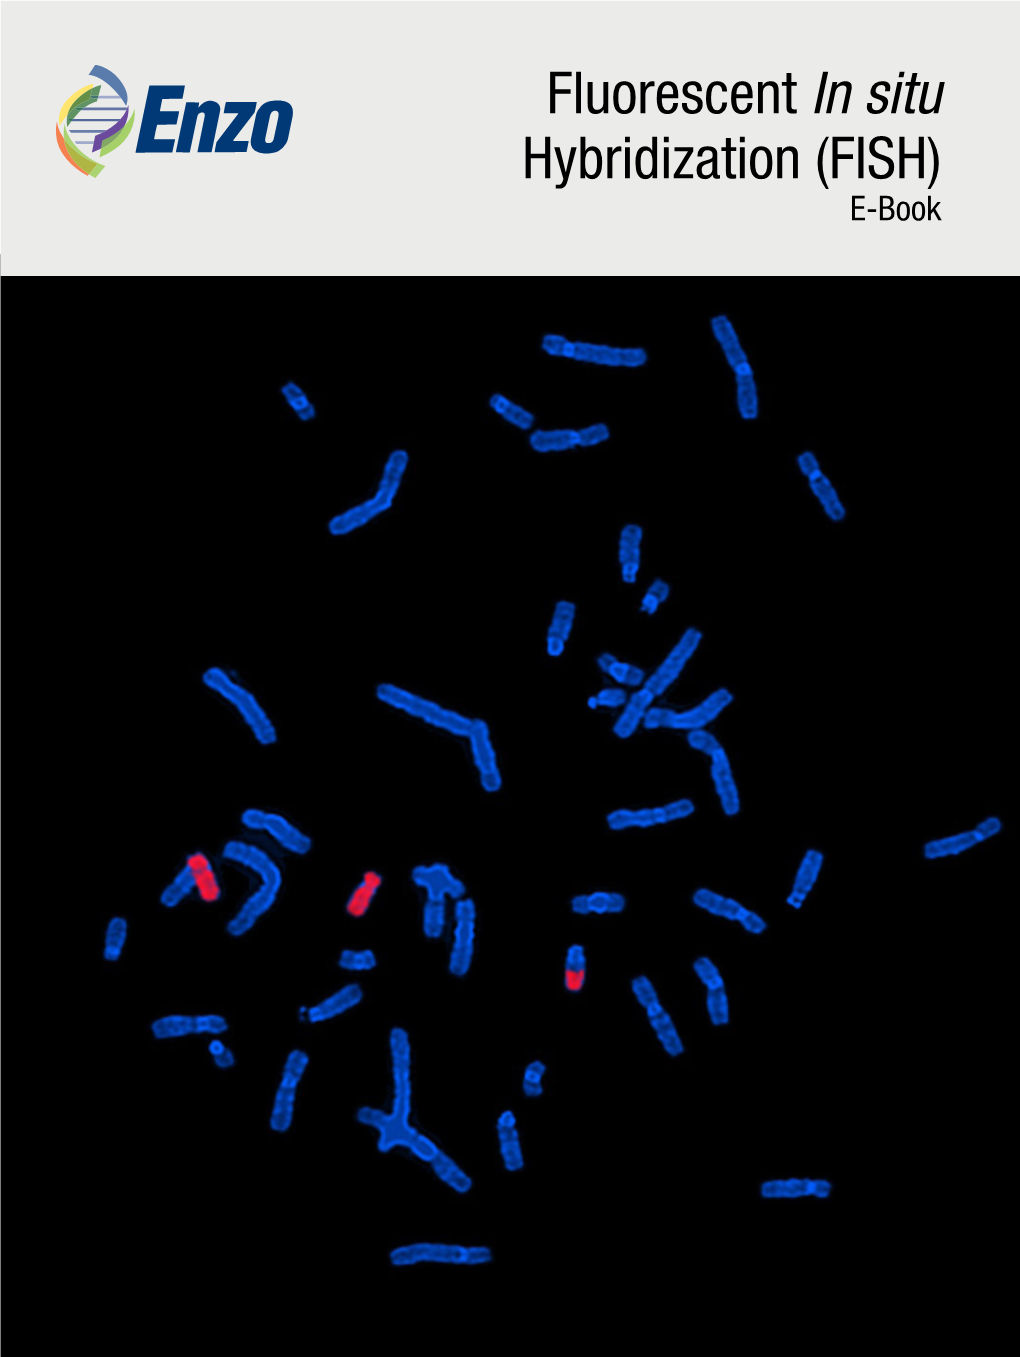 Fluorescent in Situ Hybridization (FISH) E-Book